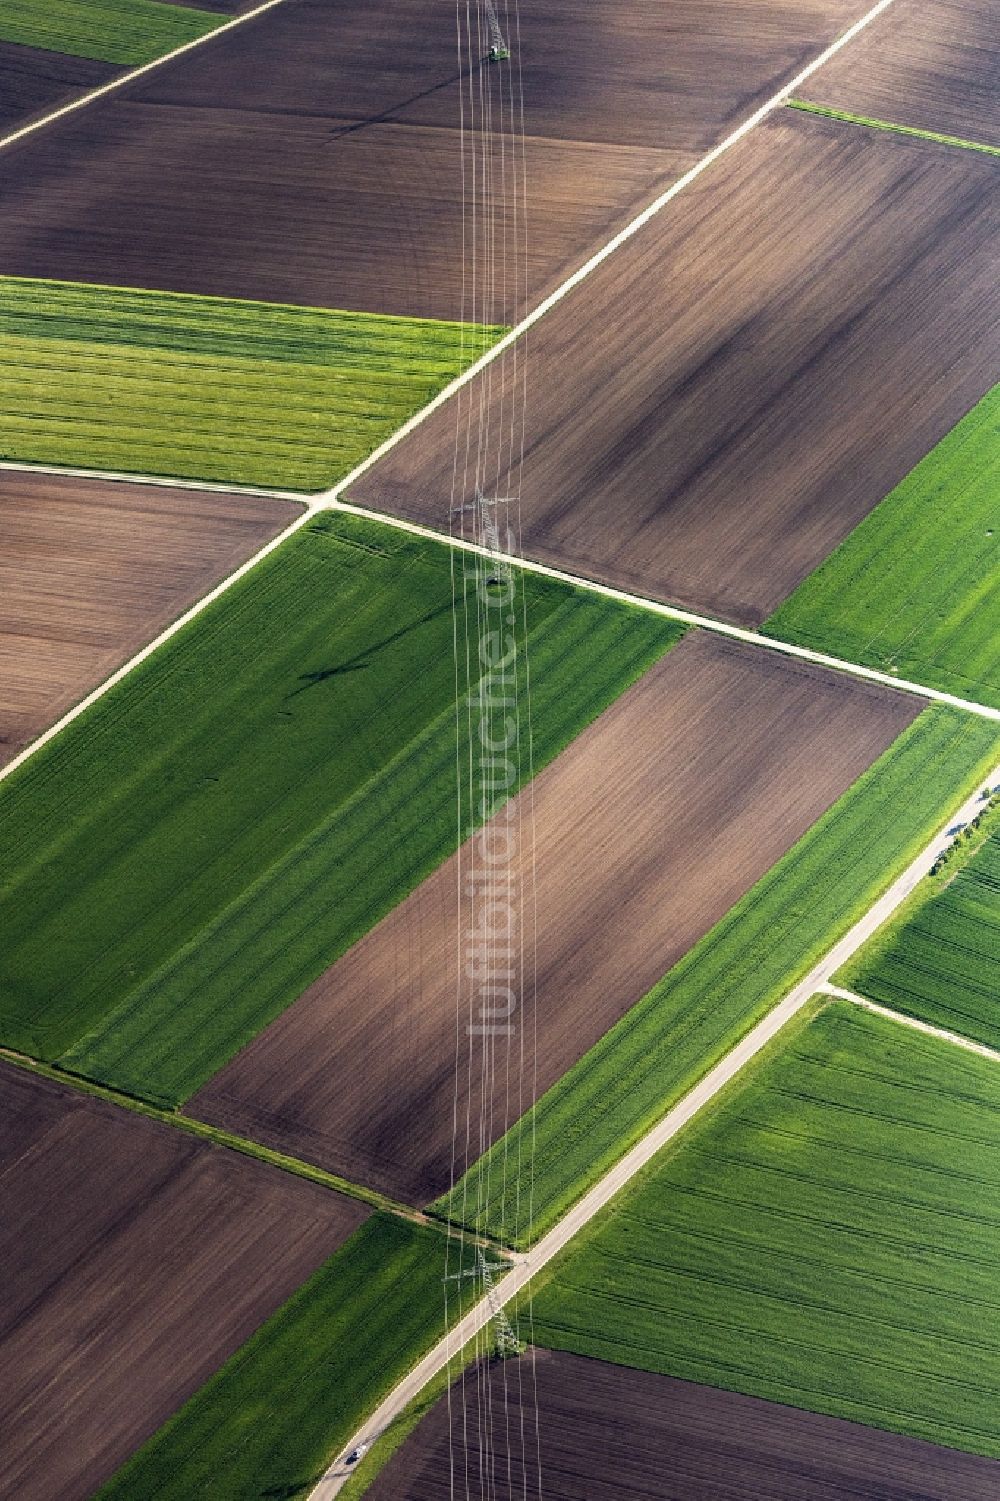 Luftbild Schwörsheim - Strukturen auf landwirtschaftlichen Feldern in Schwörsheim im Bundesland Bayern, Deutschland